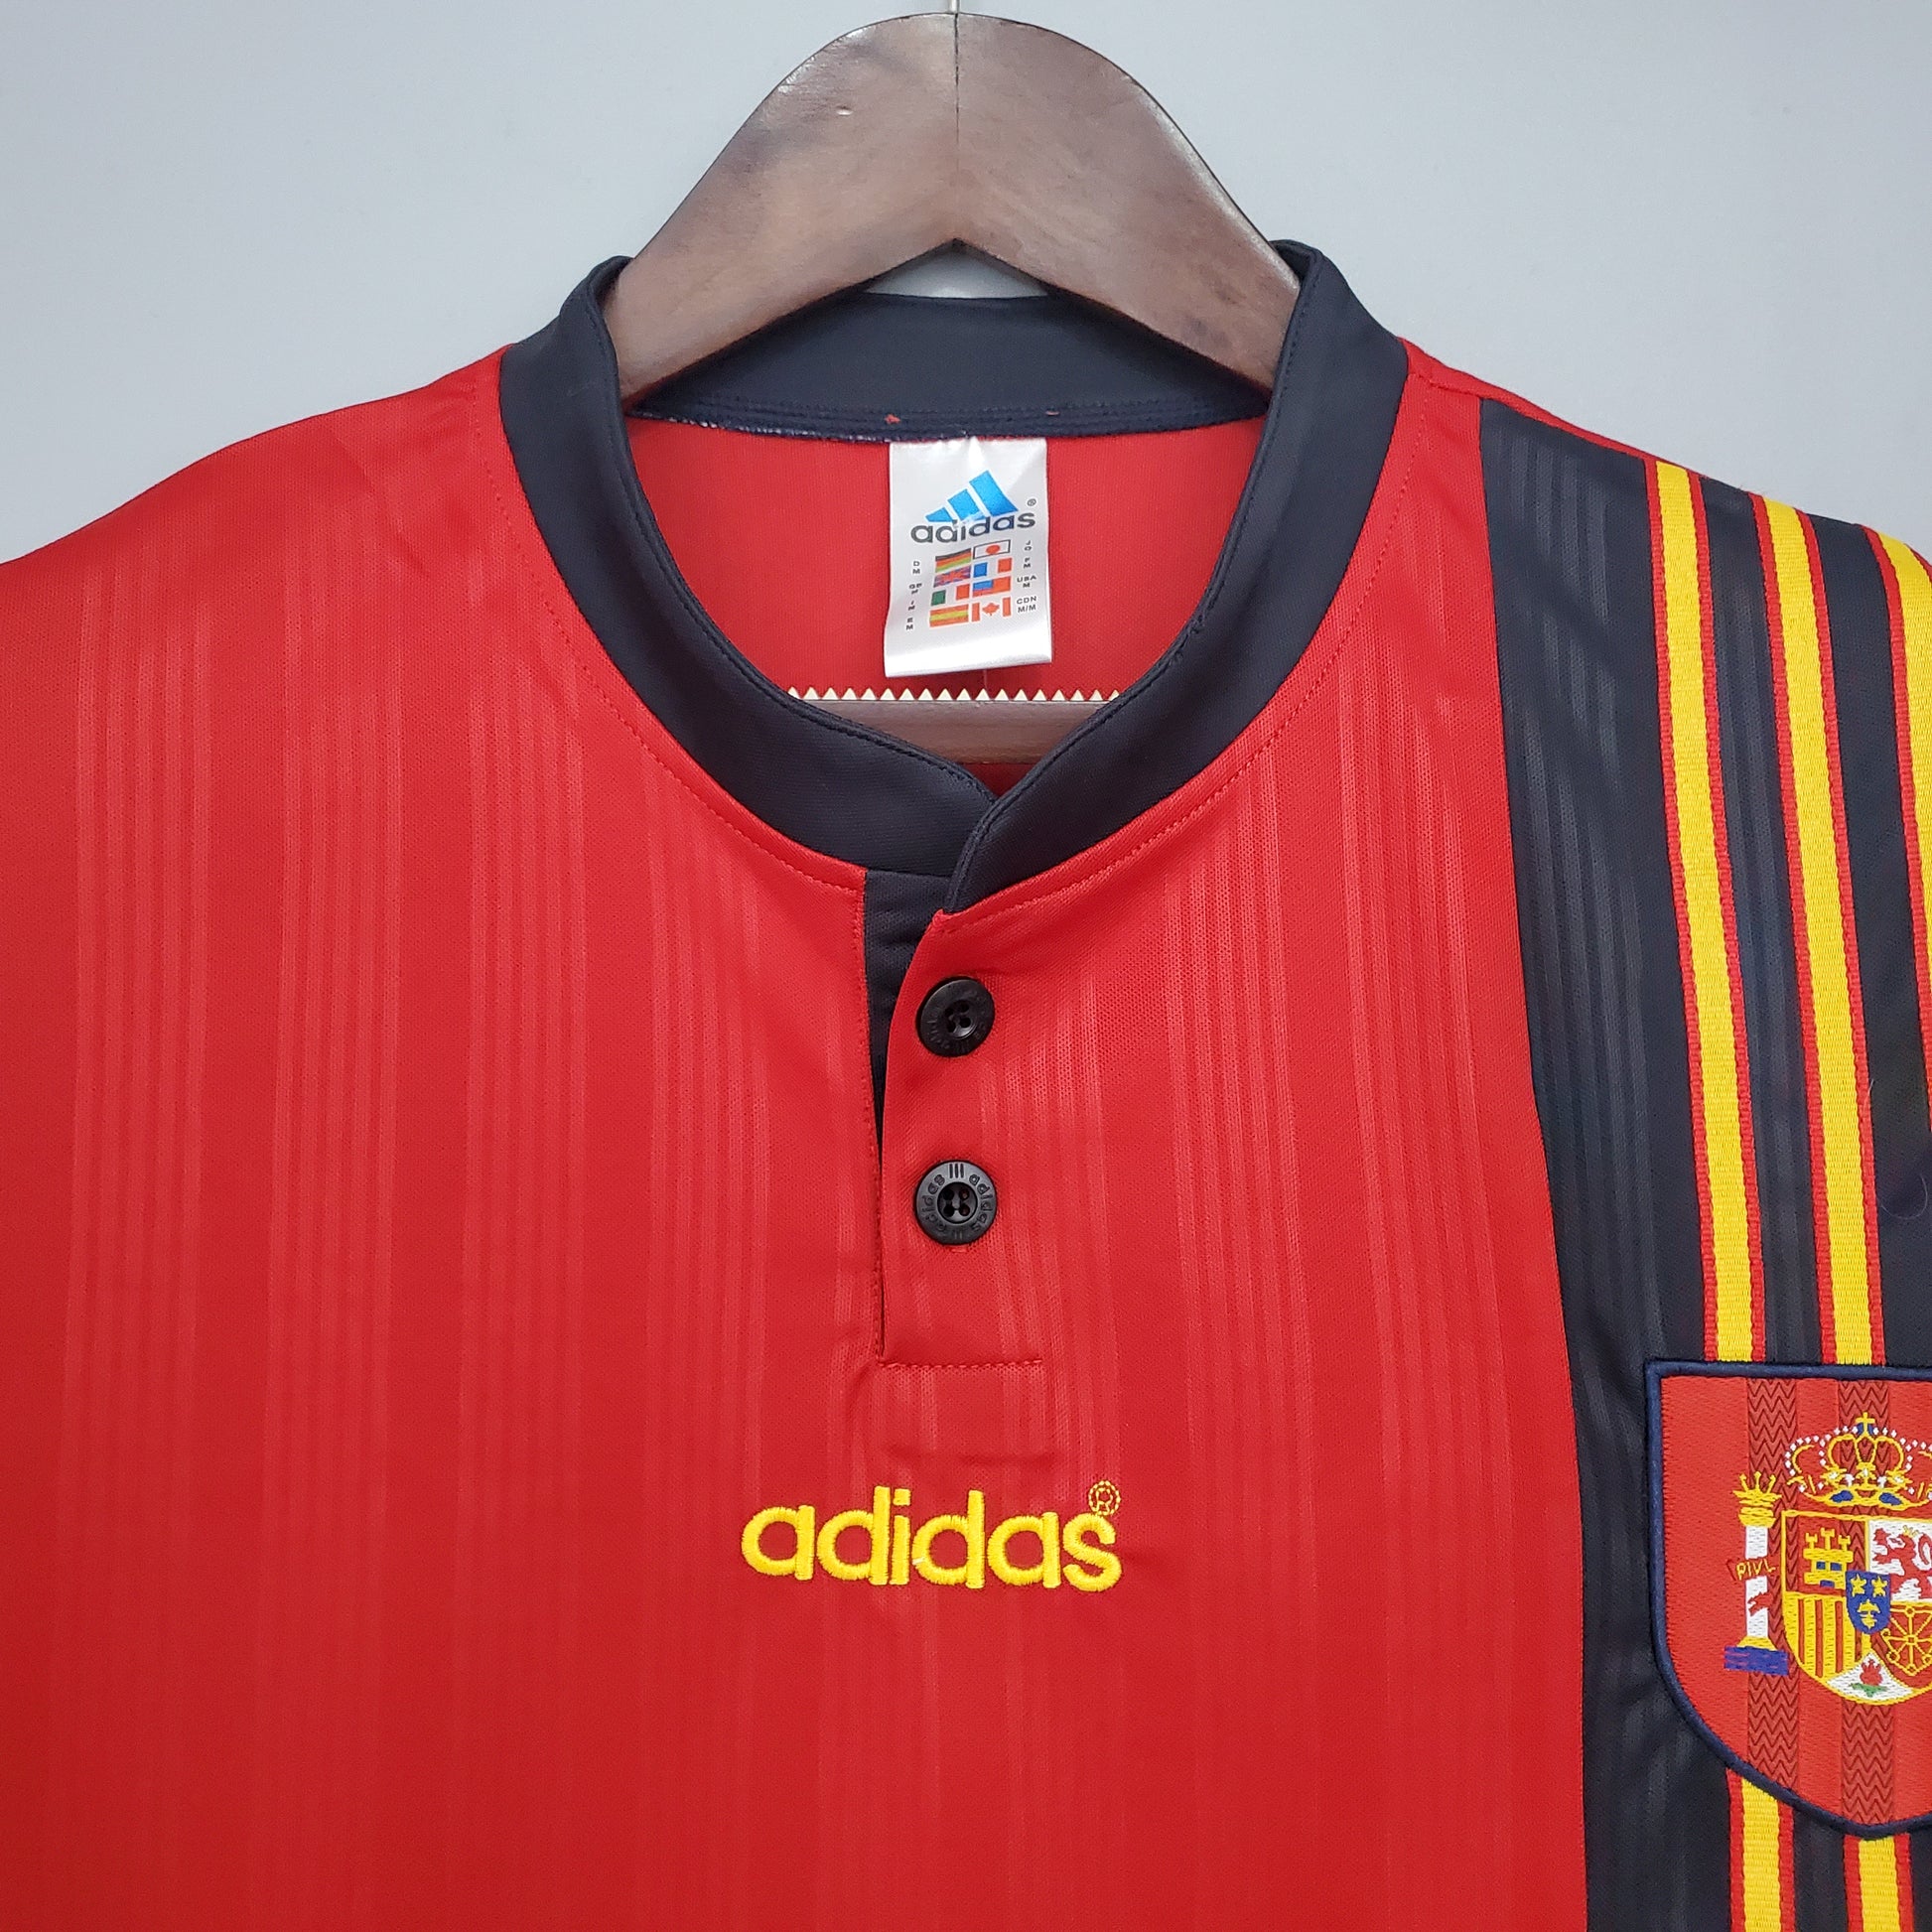 Spain 96/97 Retro Shirt Real Football Company